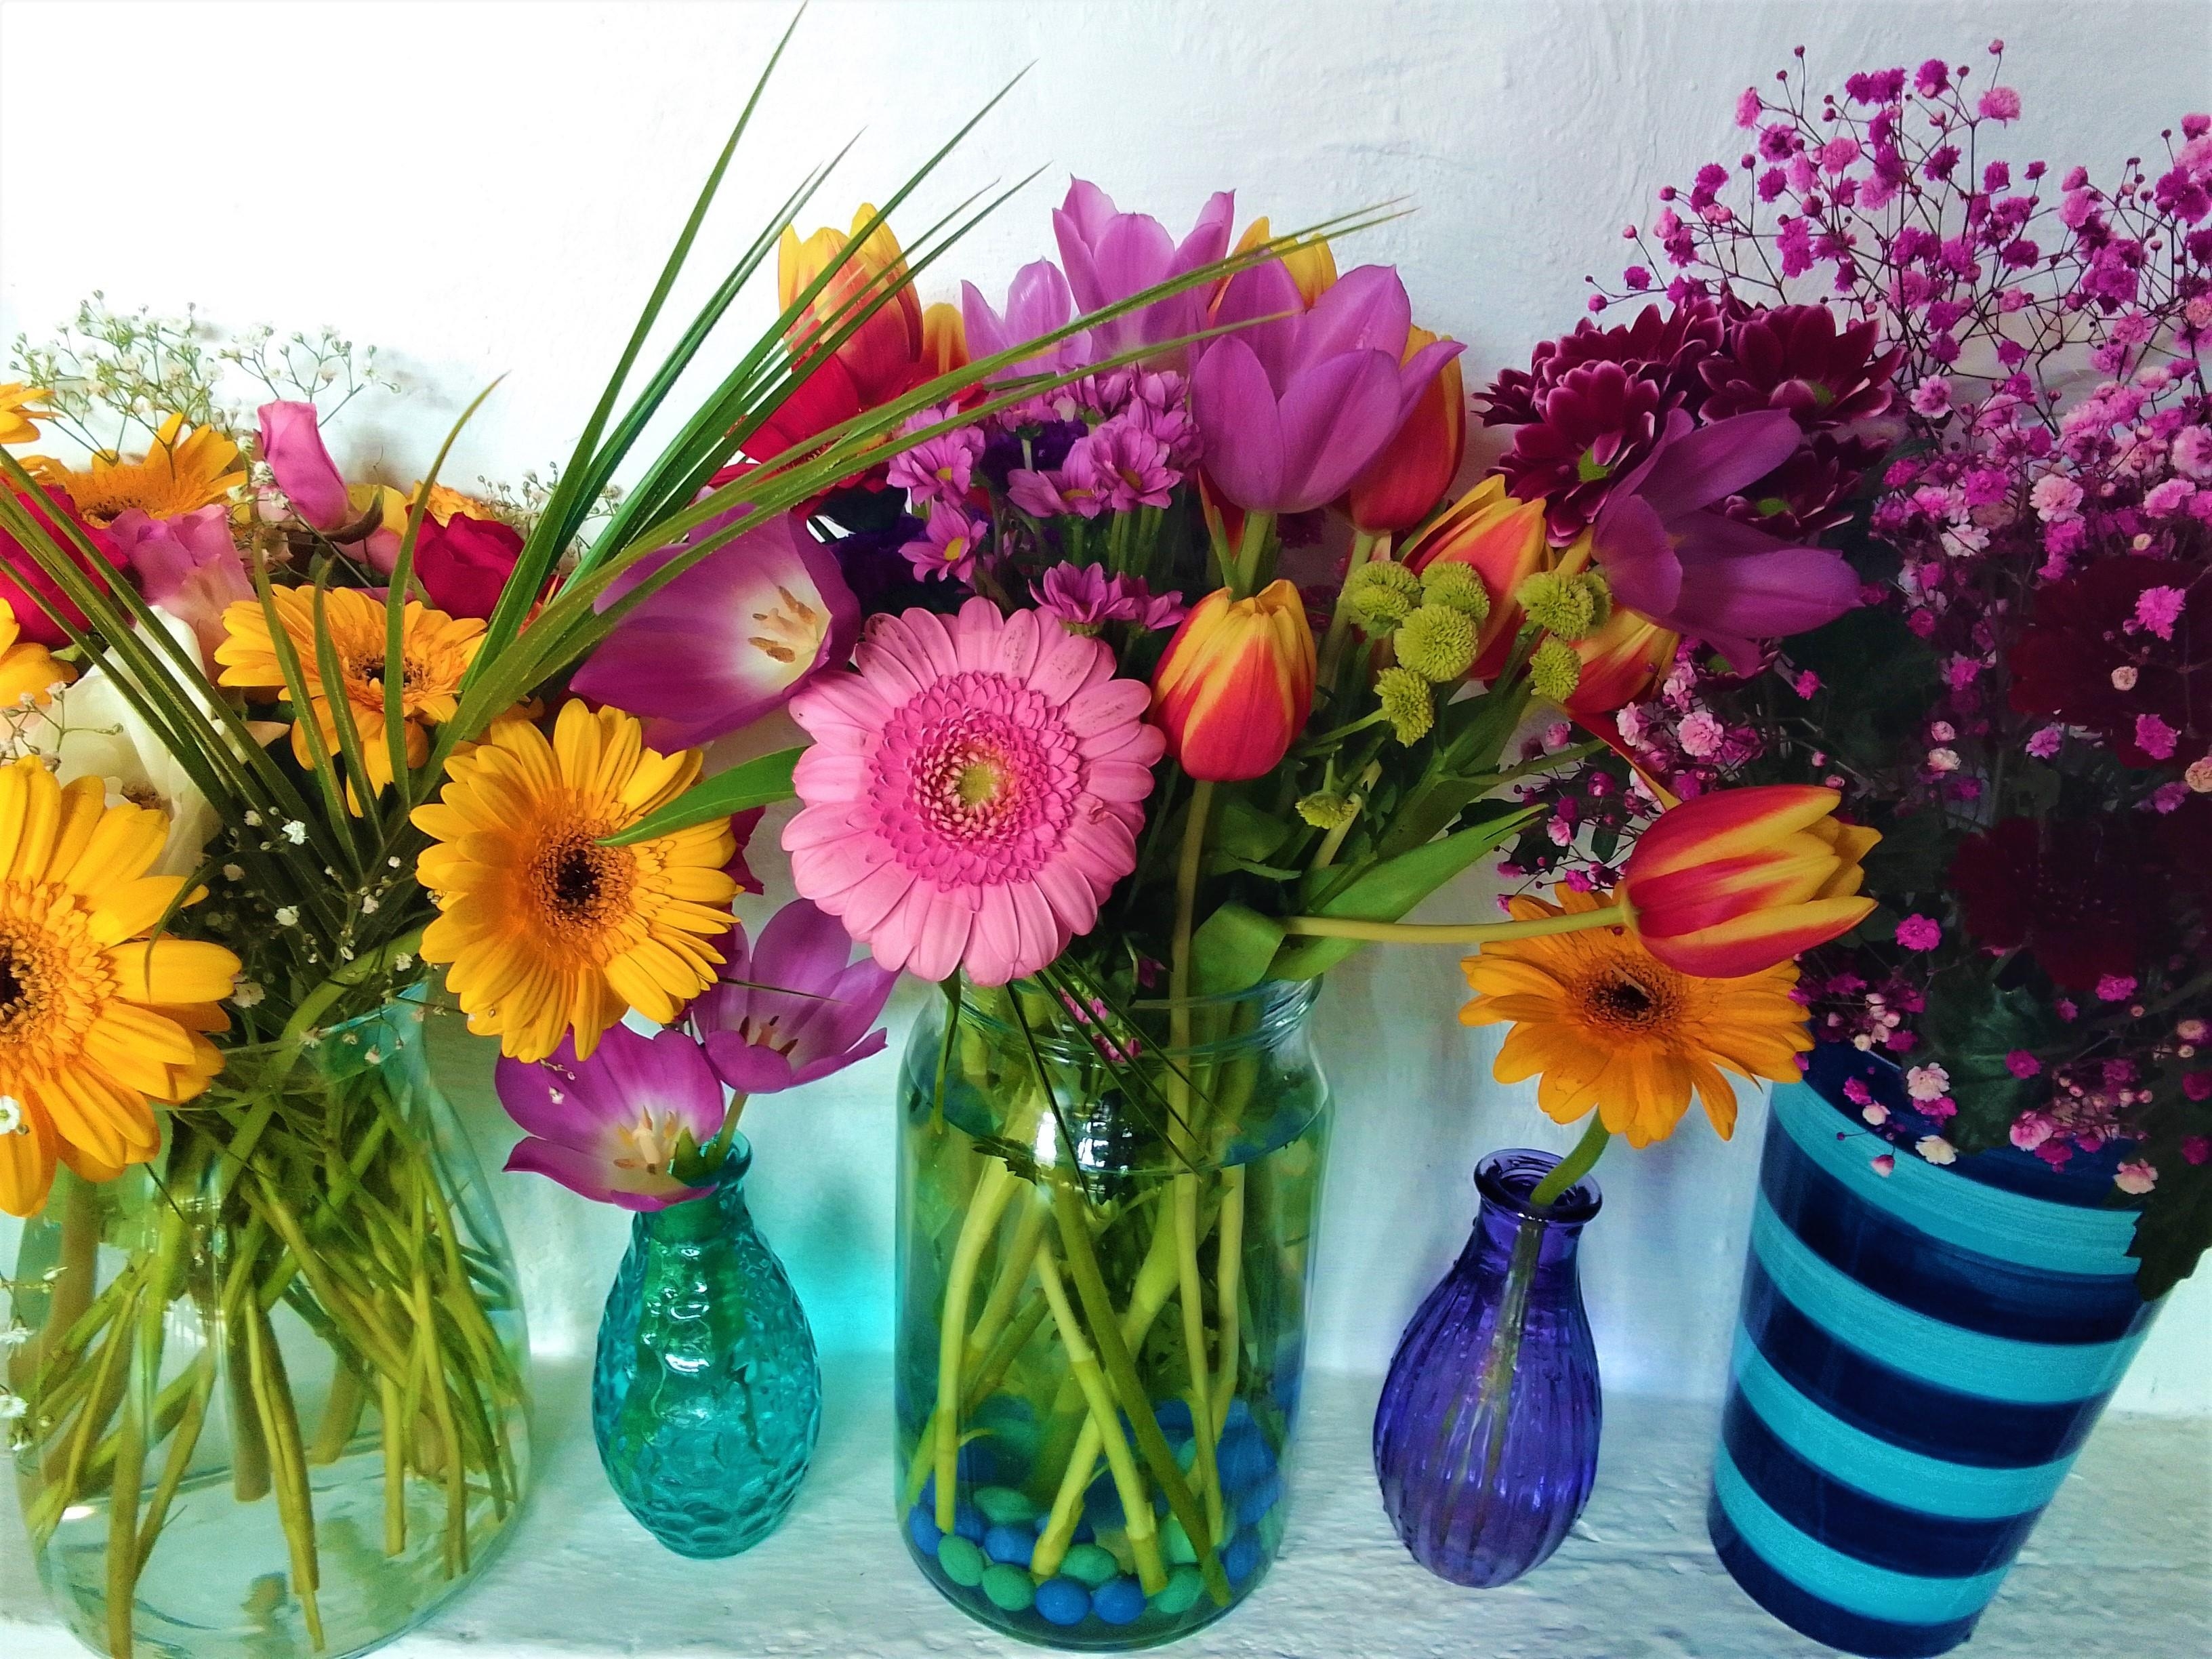 ich mag sie alle #Blumen #bunt #Vase #Glas #Keramik